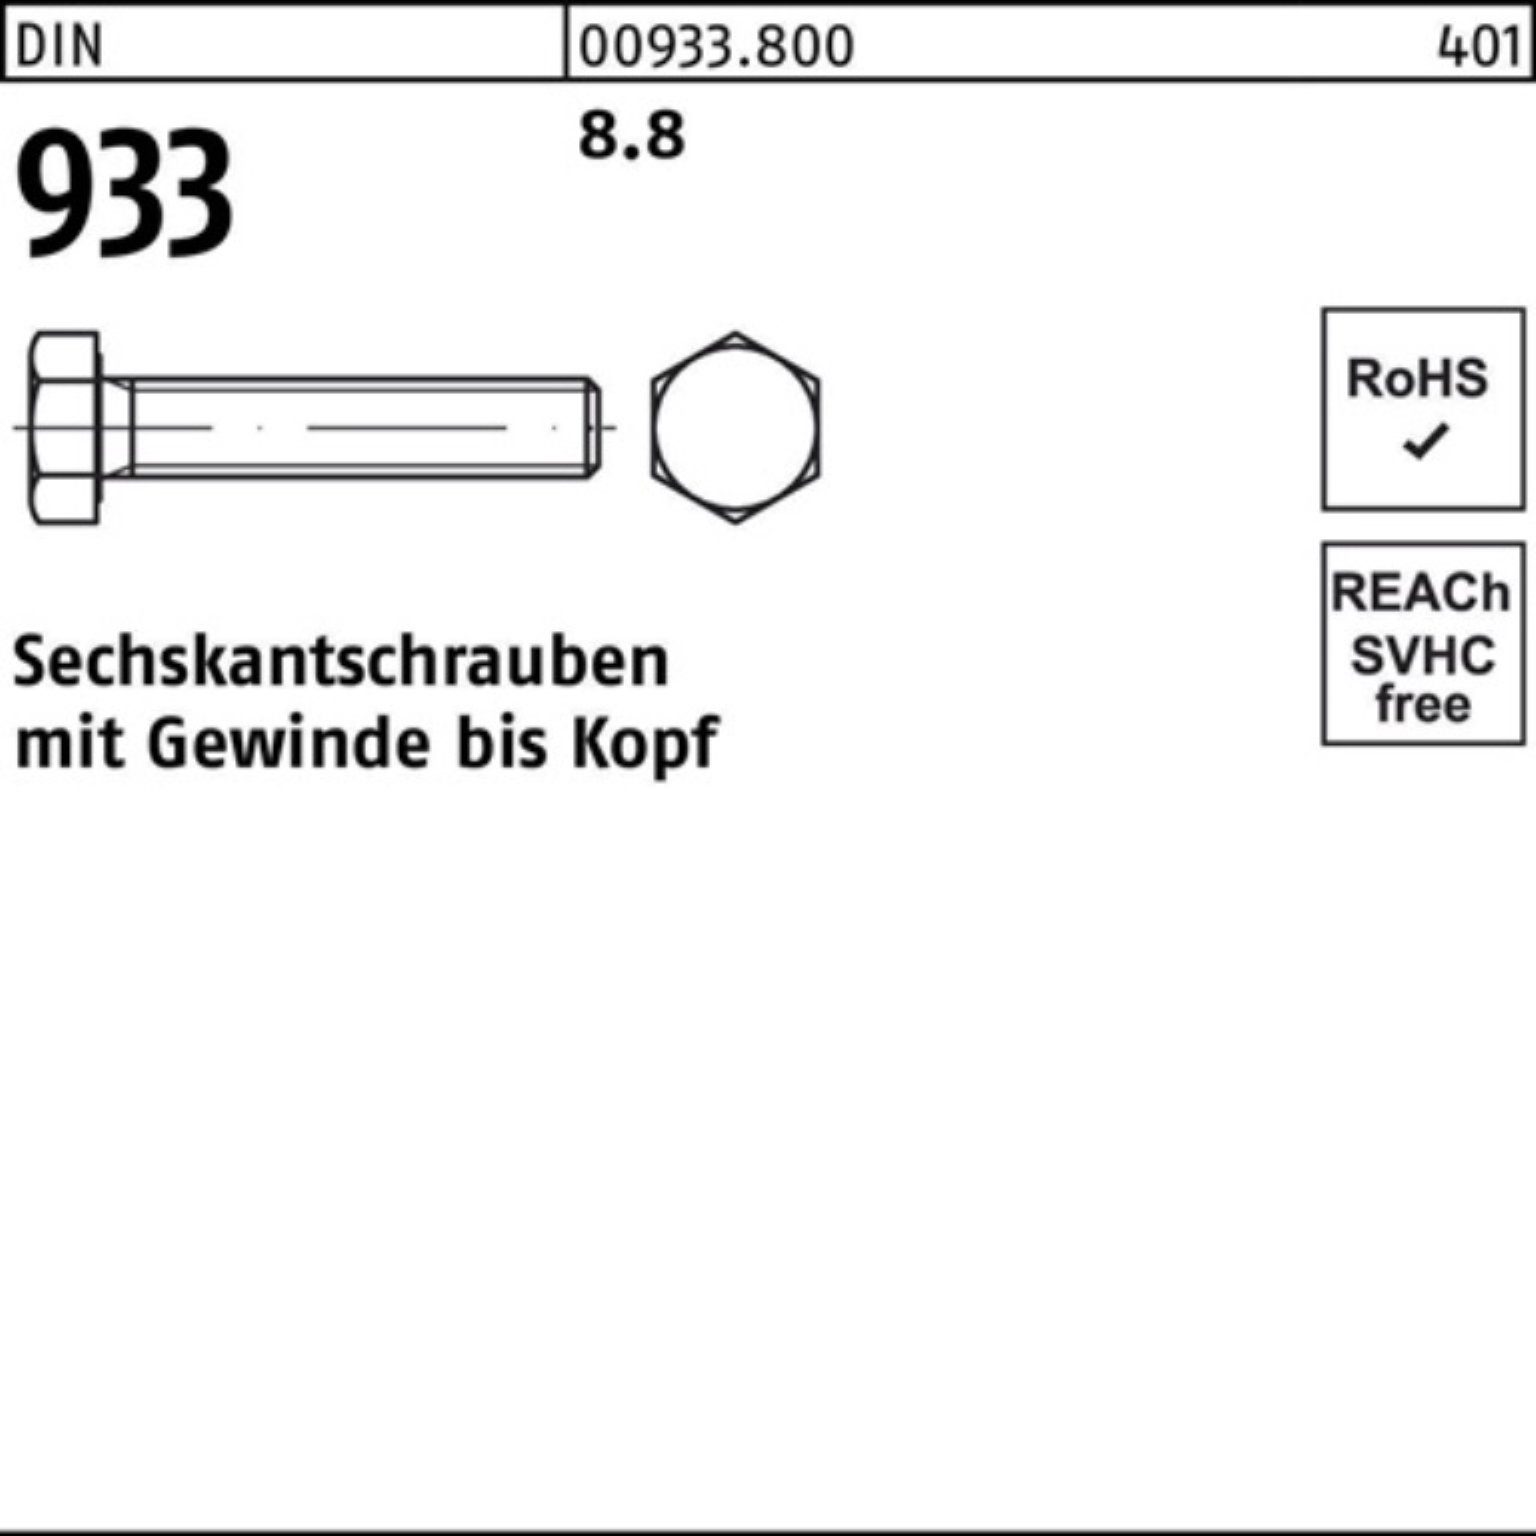 Sechskantschraube Reyher DIN 8.8 Sechskantschraube 933 VG Stück Pack 933 M7x 200er 200 DIN 40